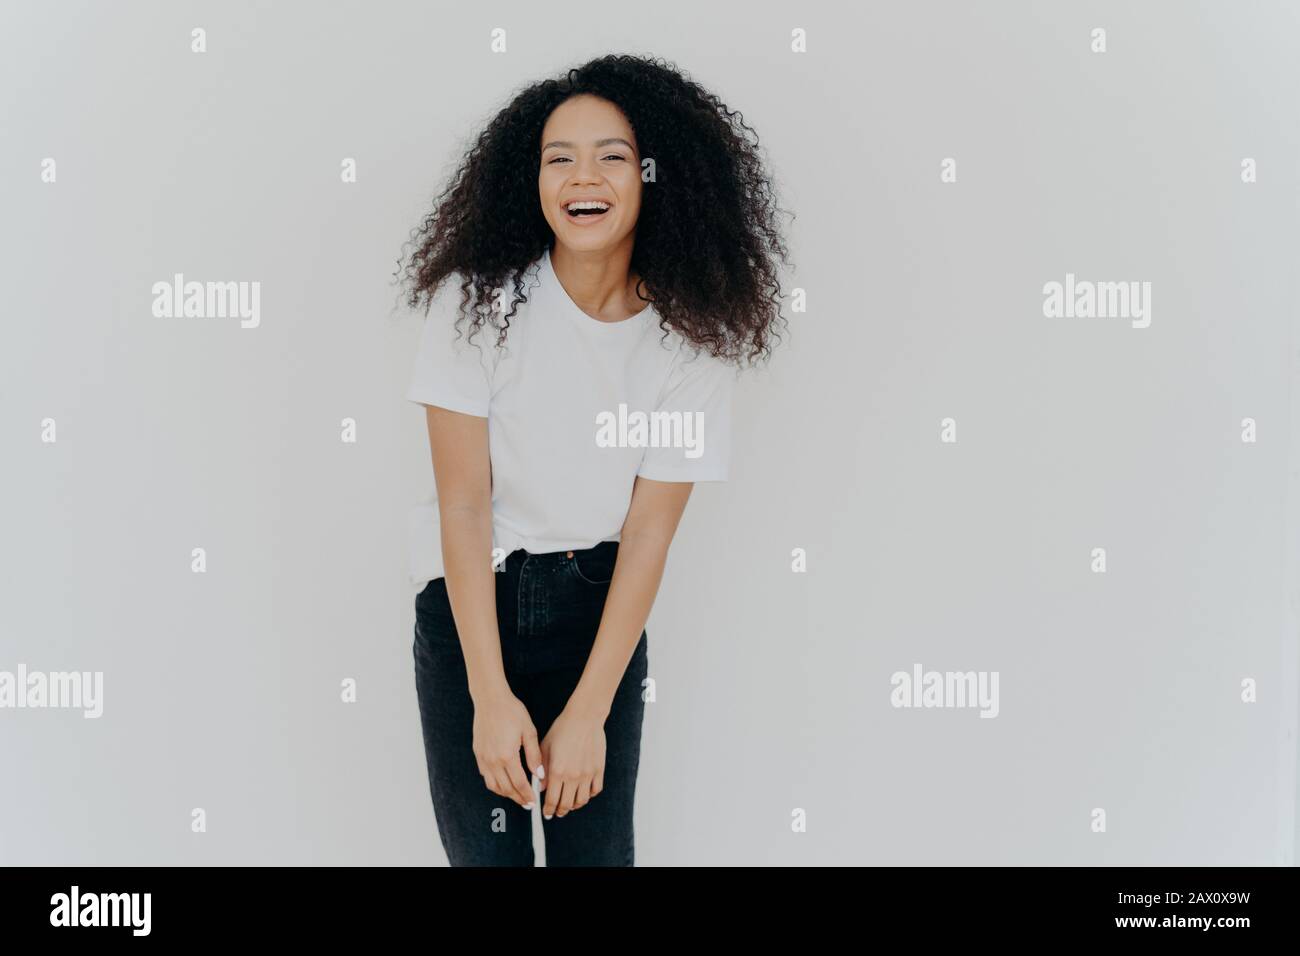 Der Studioschuss der freudigen afroamerikanischen Frau lacht glücklich, gekleidet in legerer Kleidung, fühlt sich gut an, posiert vor weißem Hintergrund mit leerem Raum für y Stockfoto